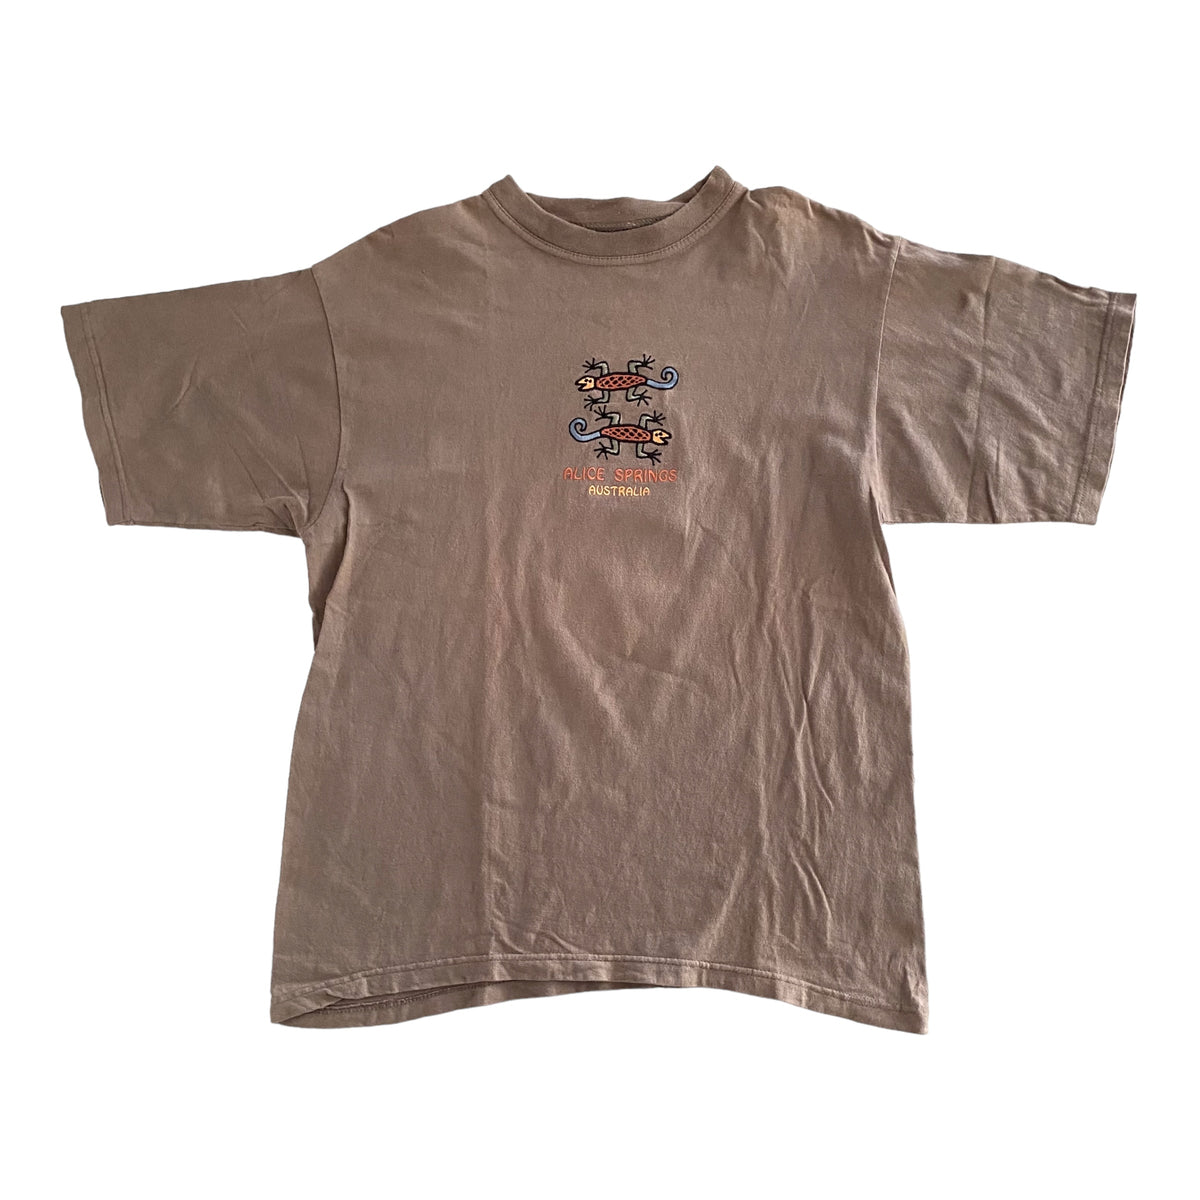 Alice Springs Lizard Northern Territory Vintage Mens T-Shirt - Medium